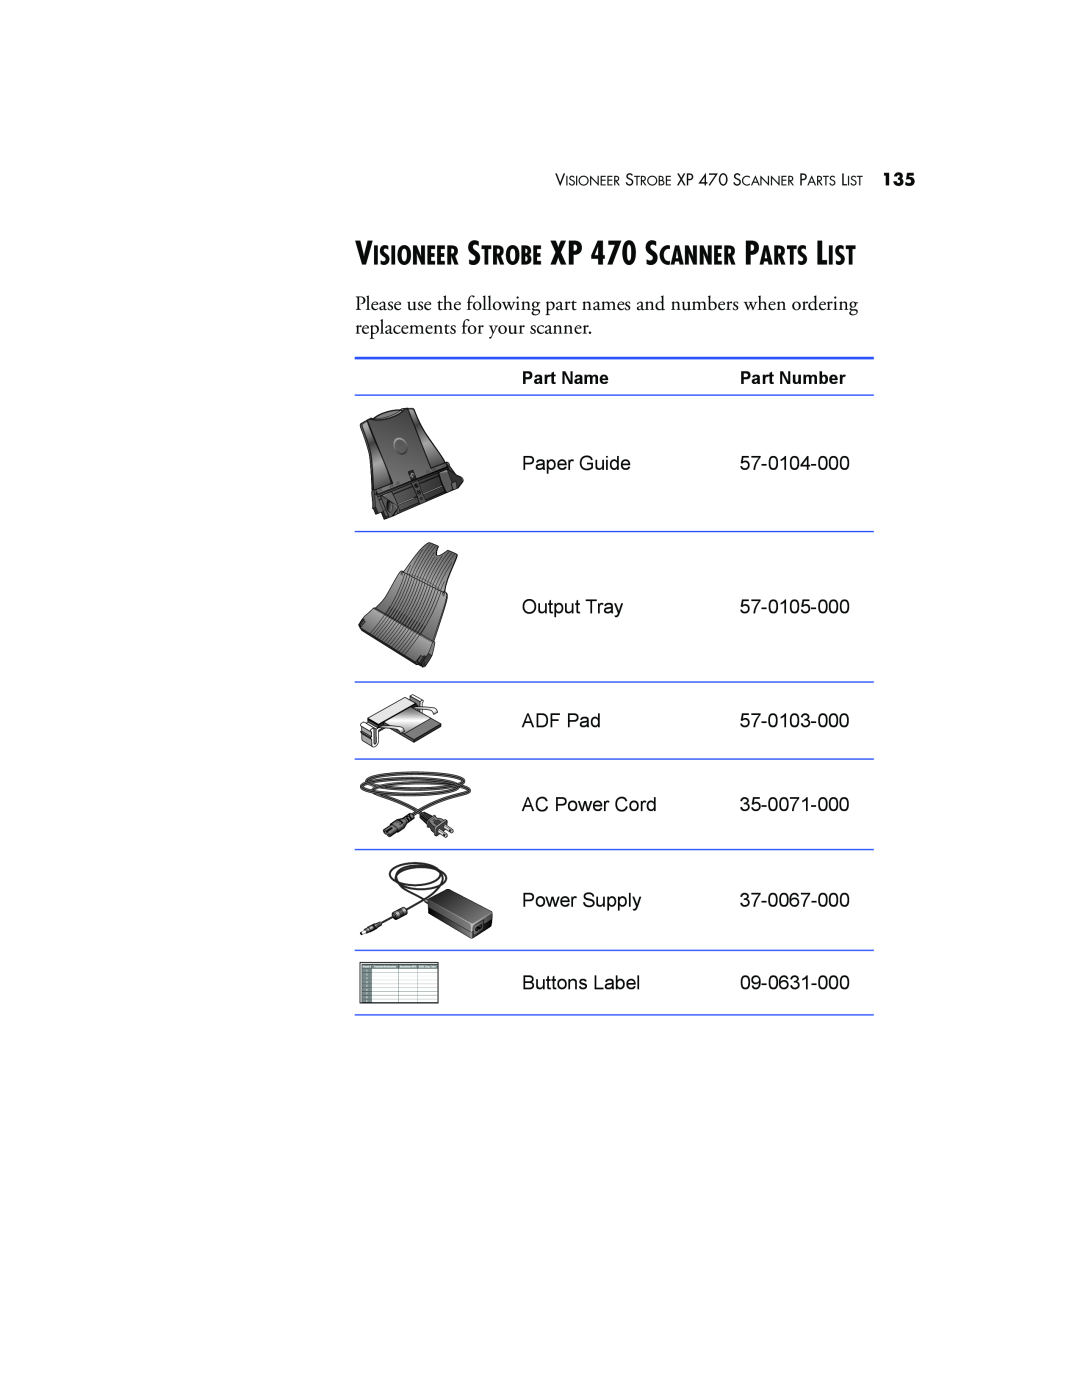 Visioneer manual VISIONEER STROBE XP 470 SCANNER PARTS LIST 